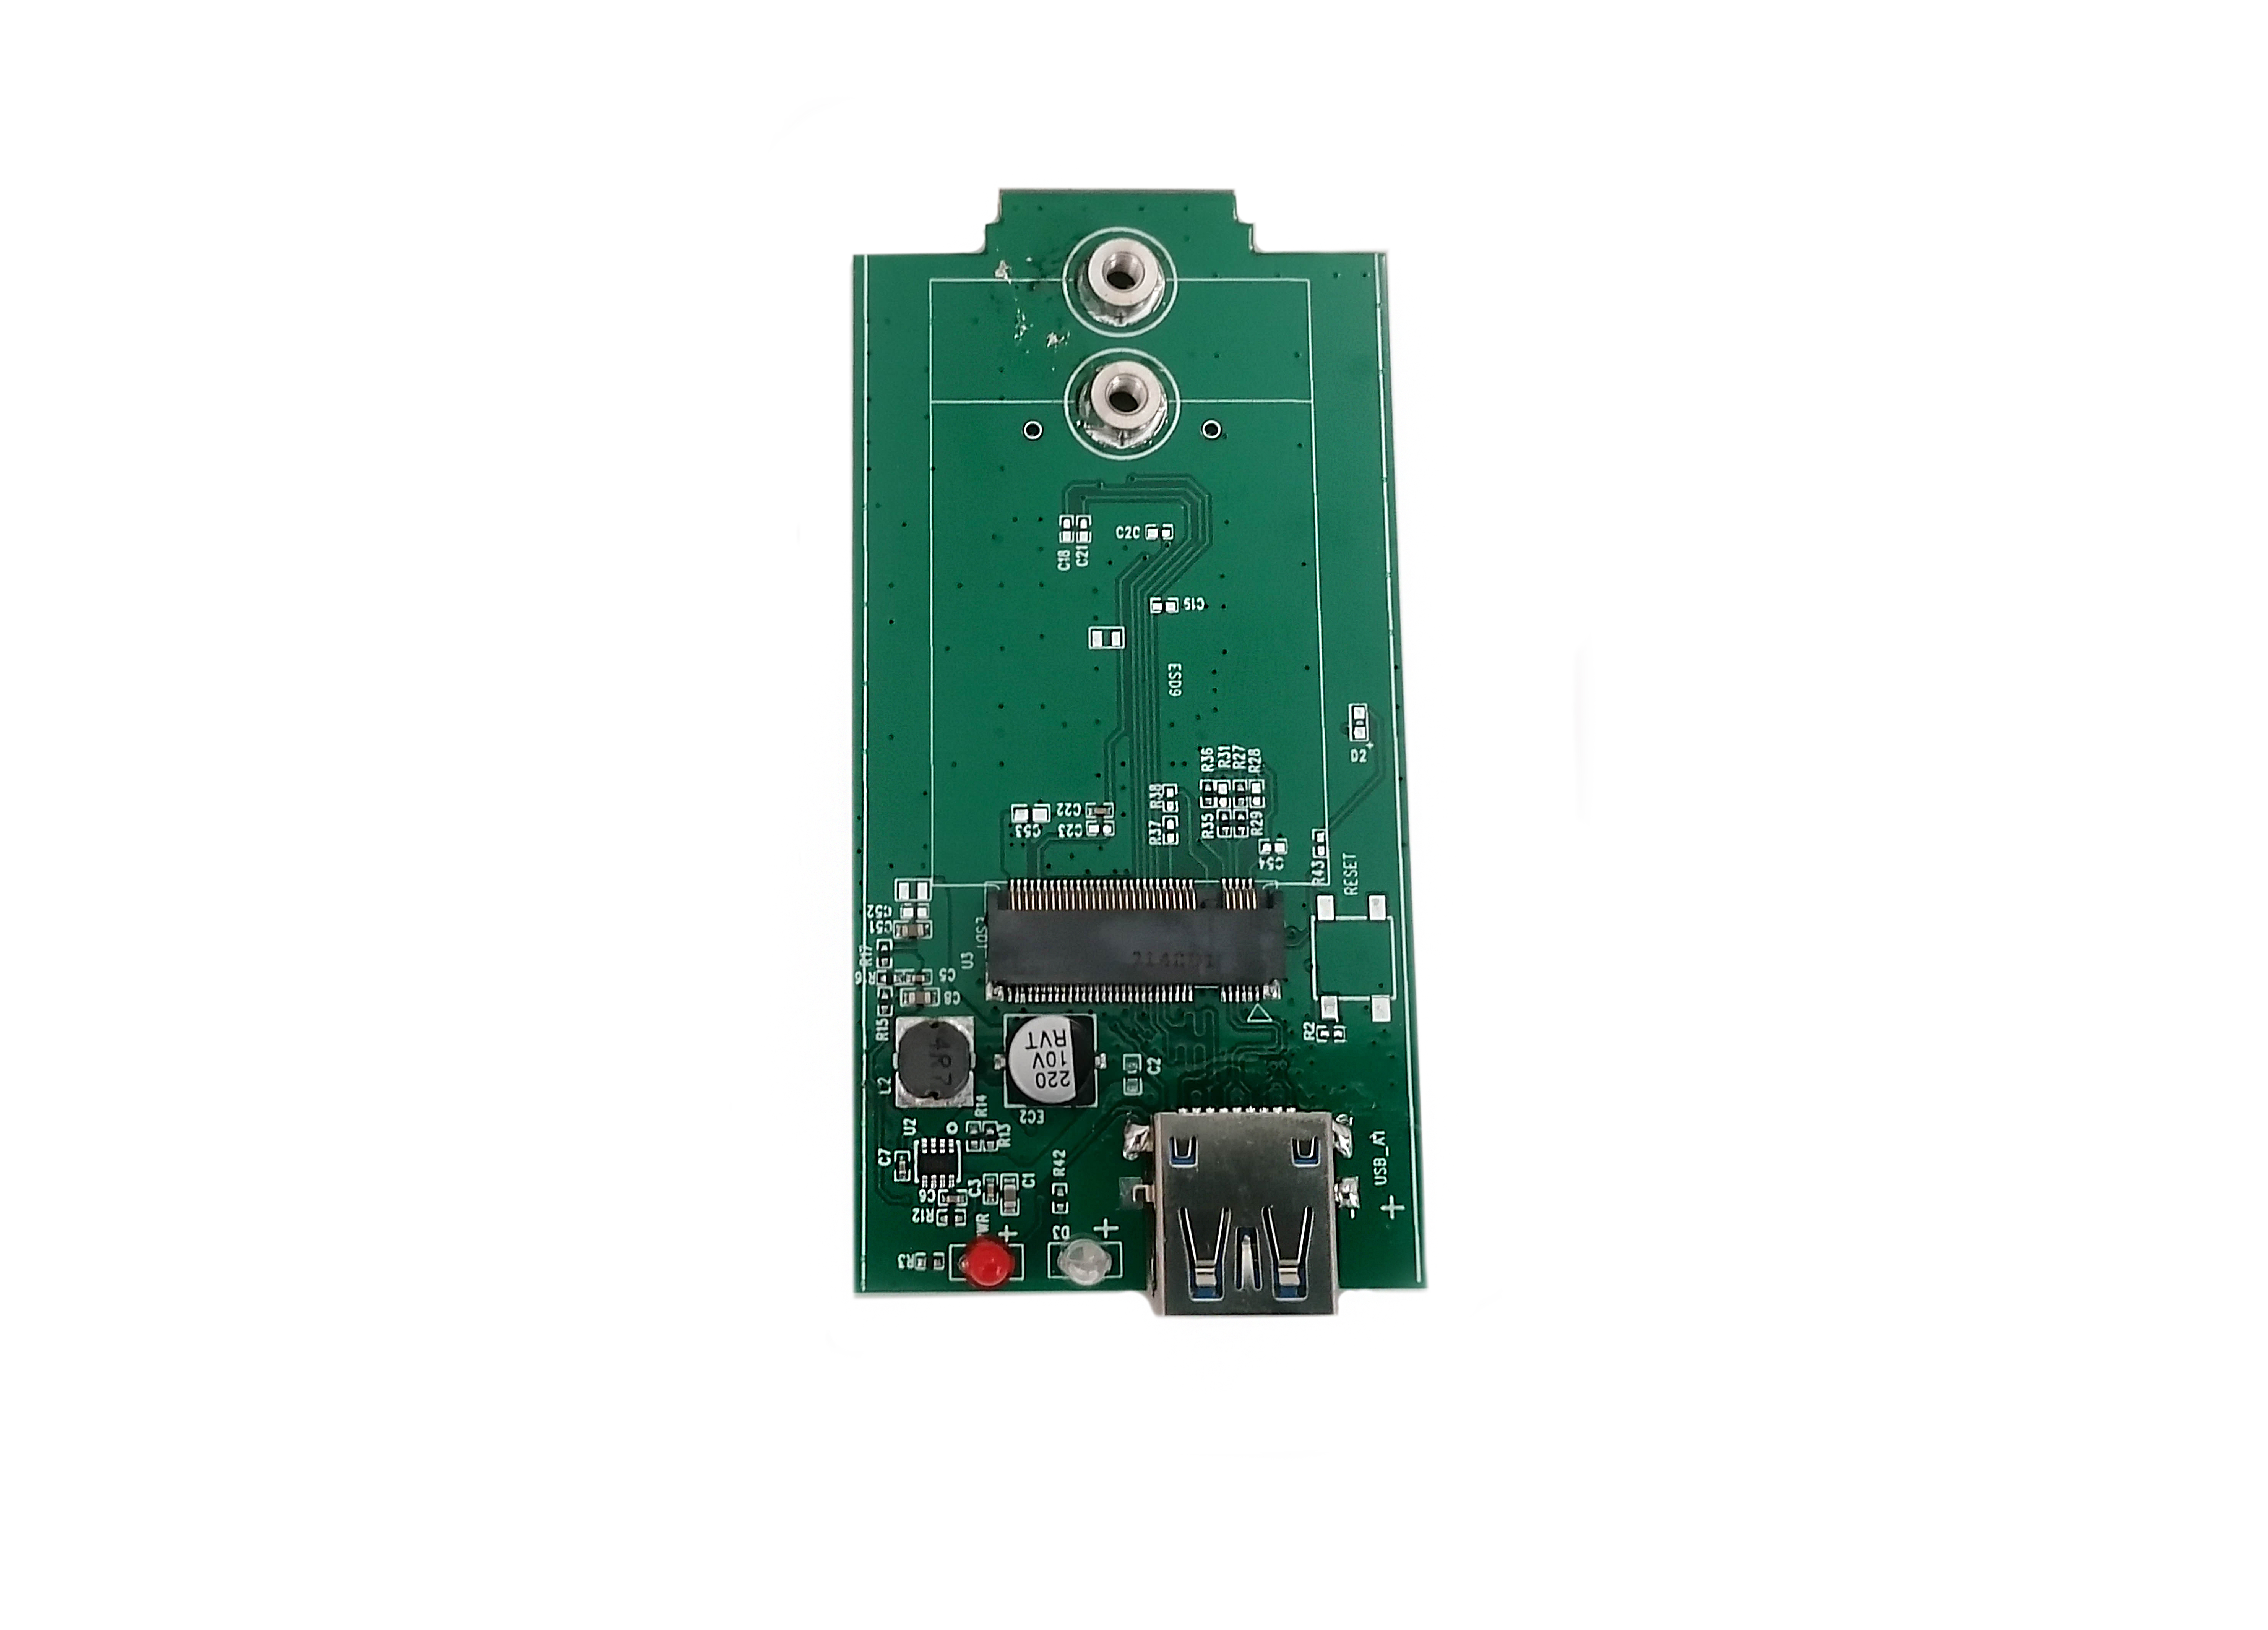 Детальное изображение товара "Адаптер USB 3.0 Box для M.2 модемов" из каталога оборудования Антенна76